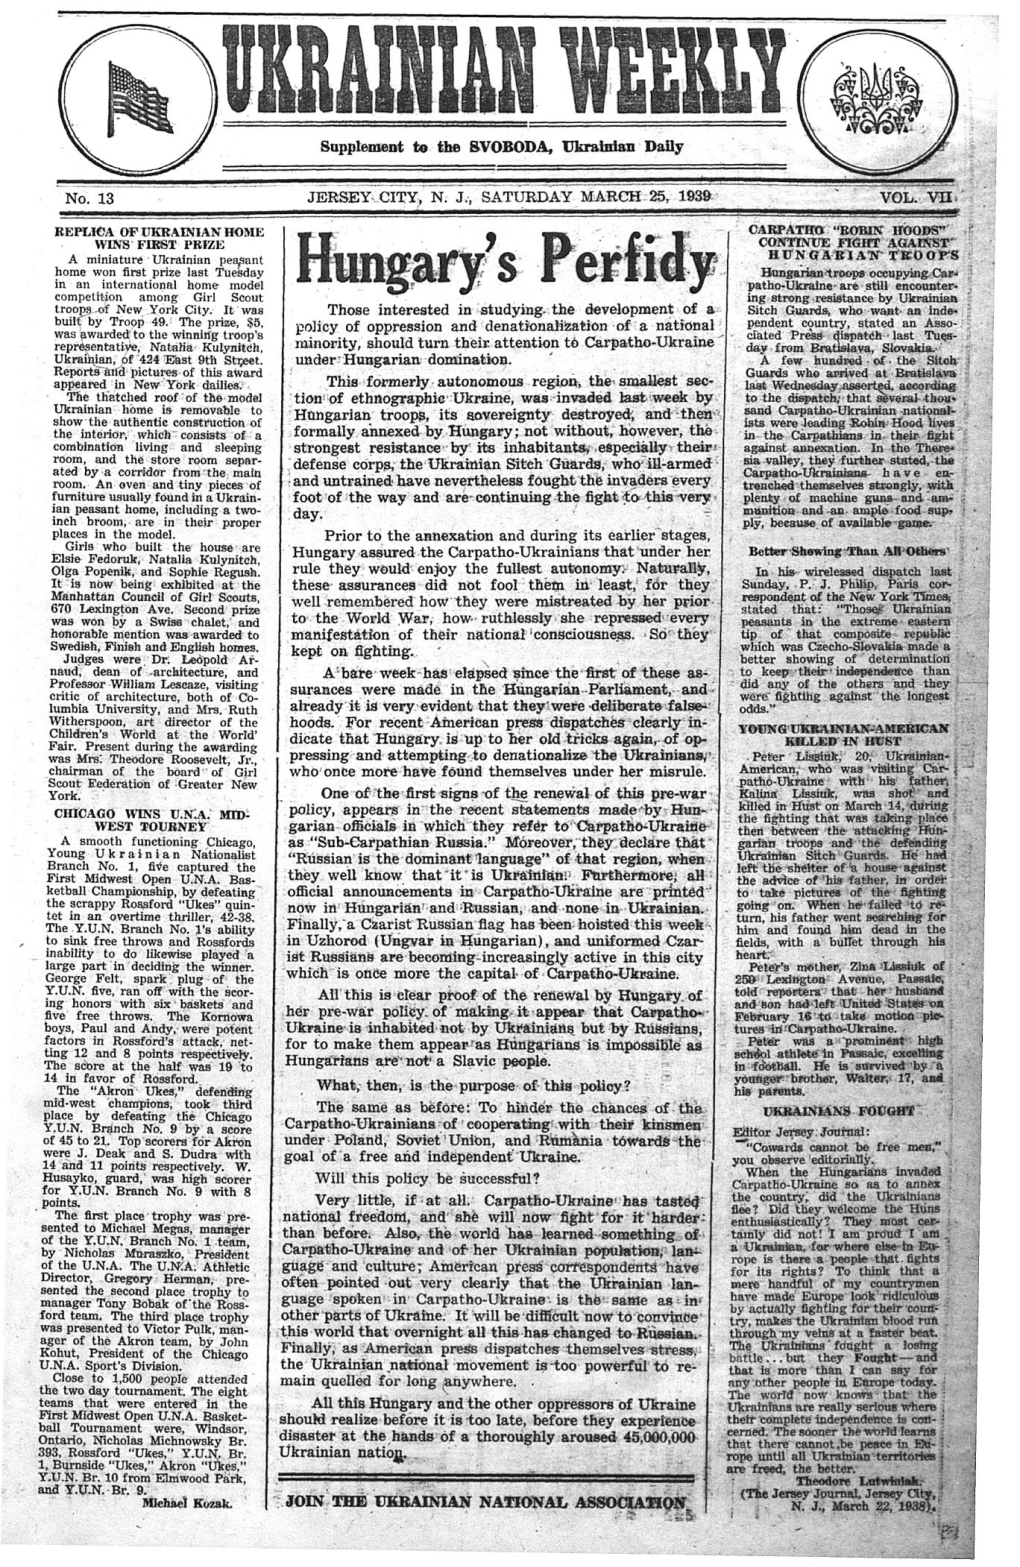 The Ukrainian Weekly 1939